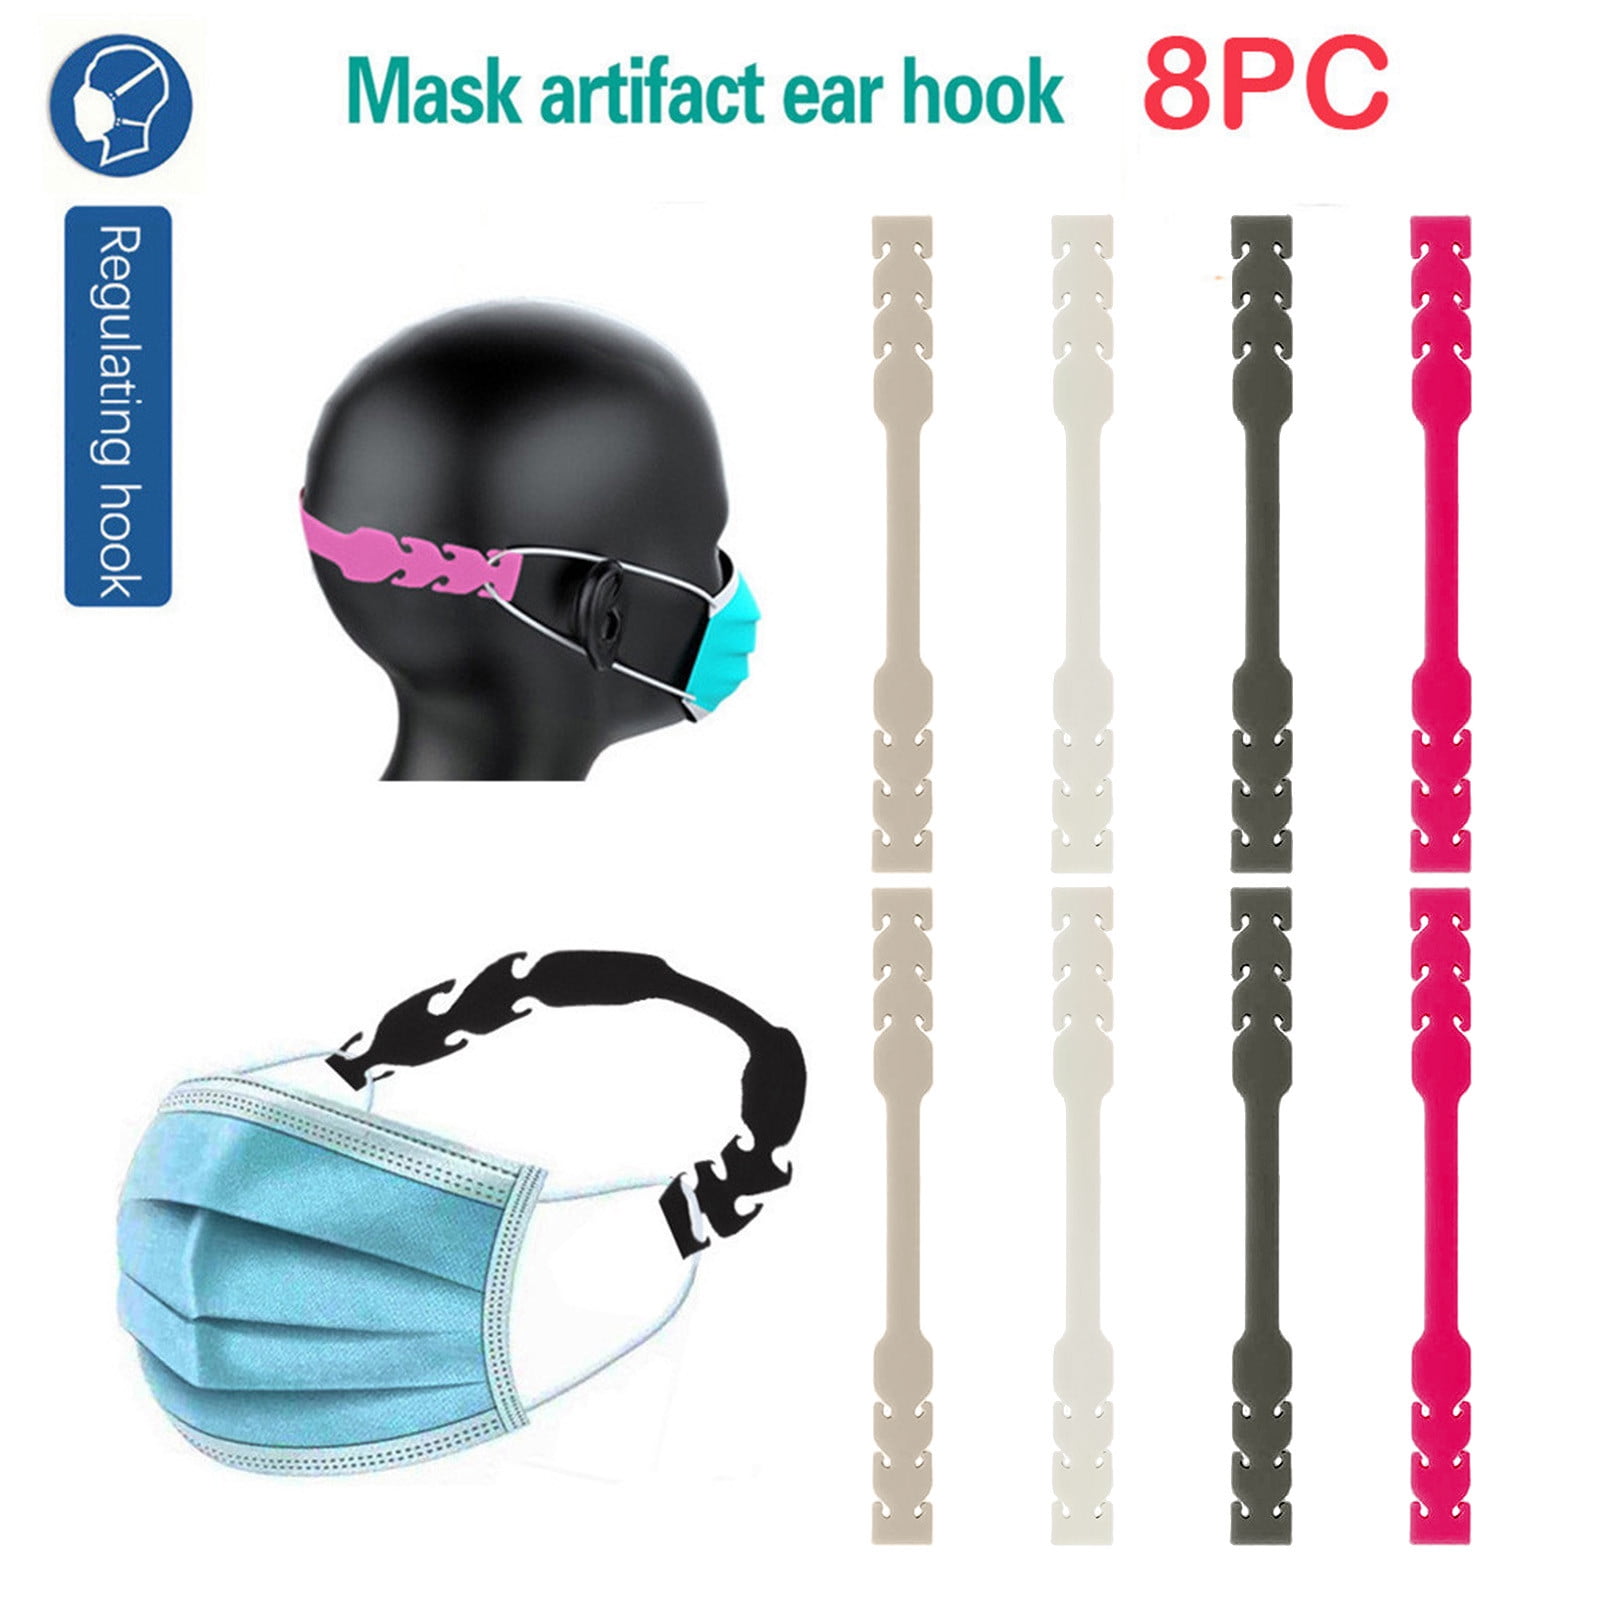 Zwitsers Implementeren vrije tijd RnemiTe-amo Deals！Set Mask Ear Hook Ear Hook Mask Rubber Extension Buckle  Fixed Ear Hook 8-Piece - Walmart.com